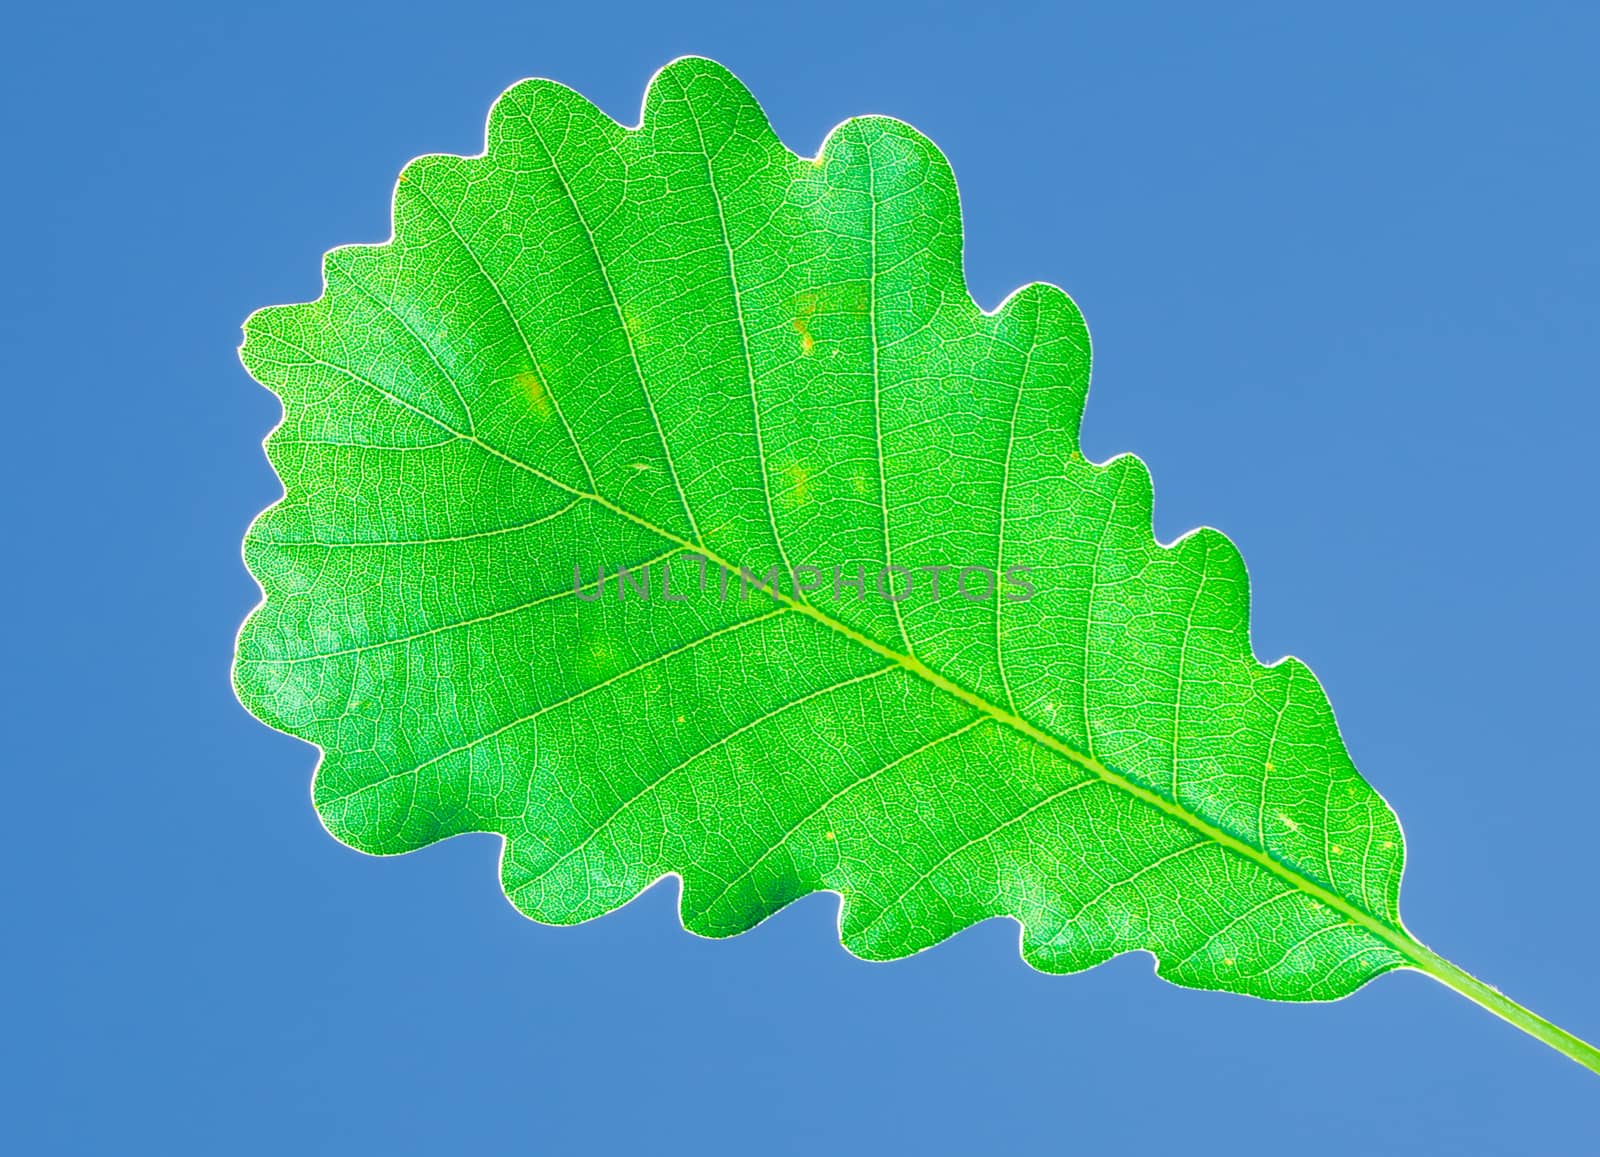 The green oak leaf under blue sky at the botanical garden